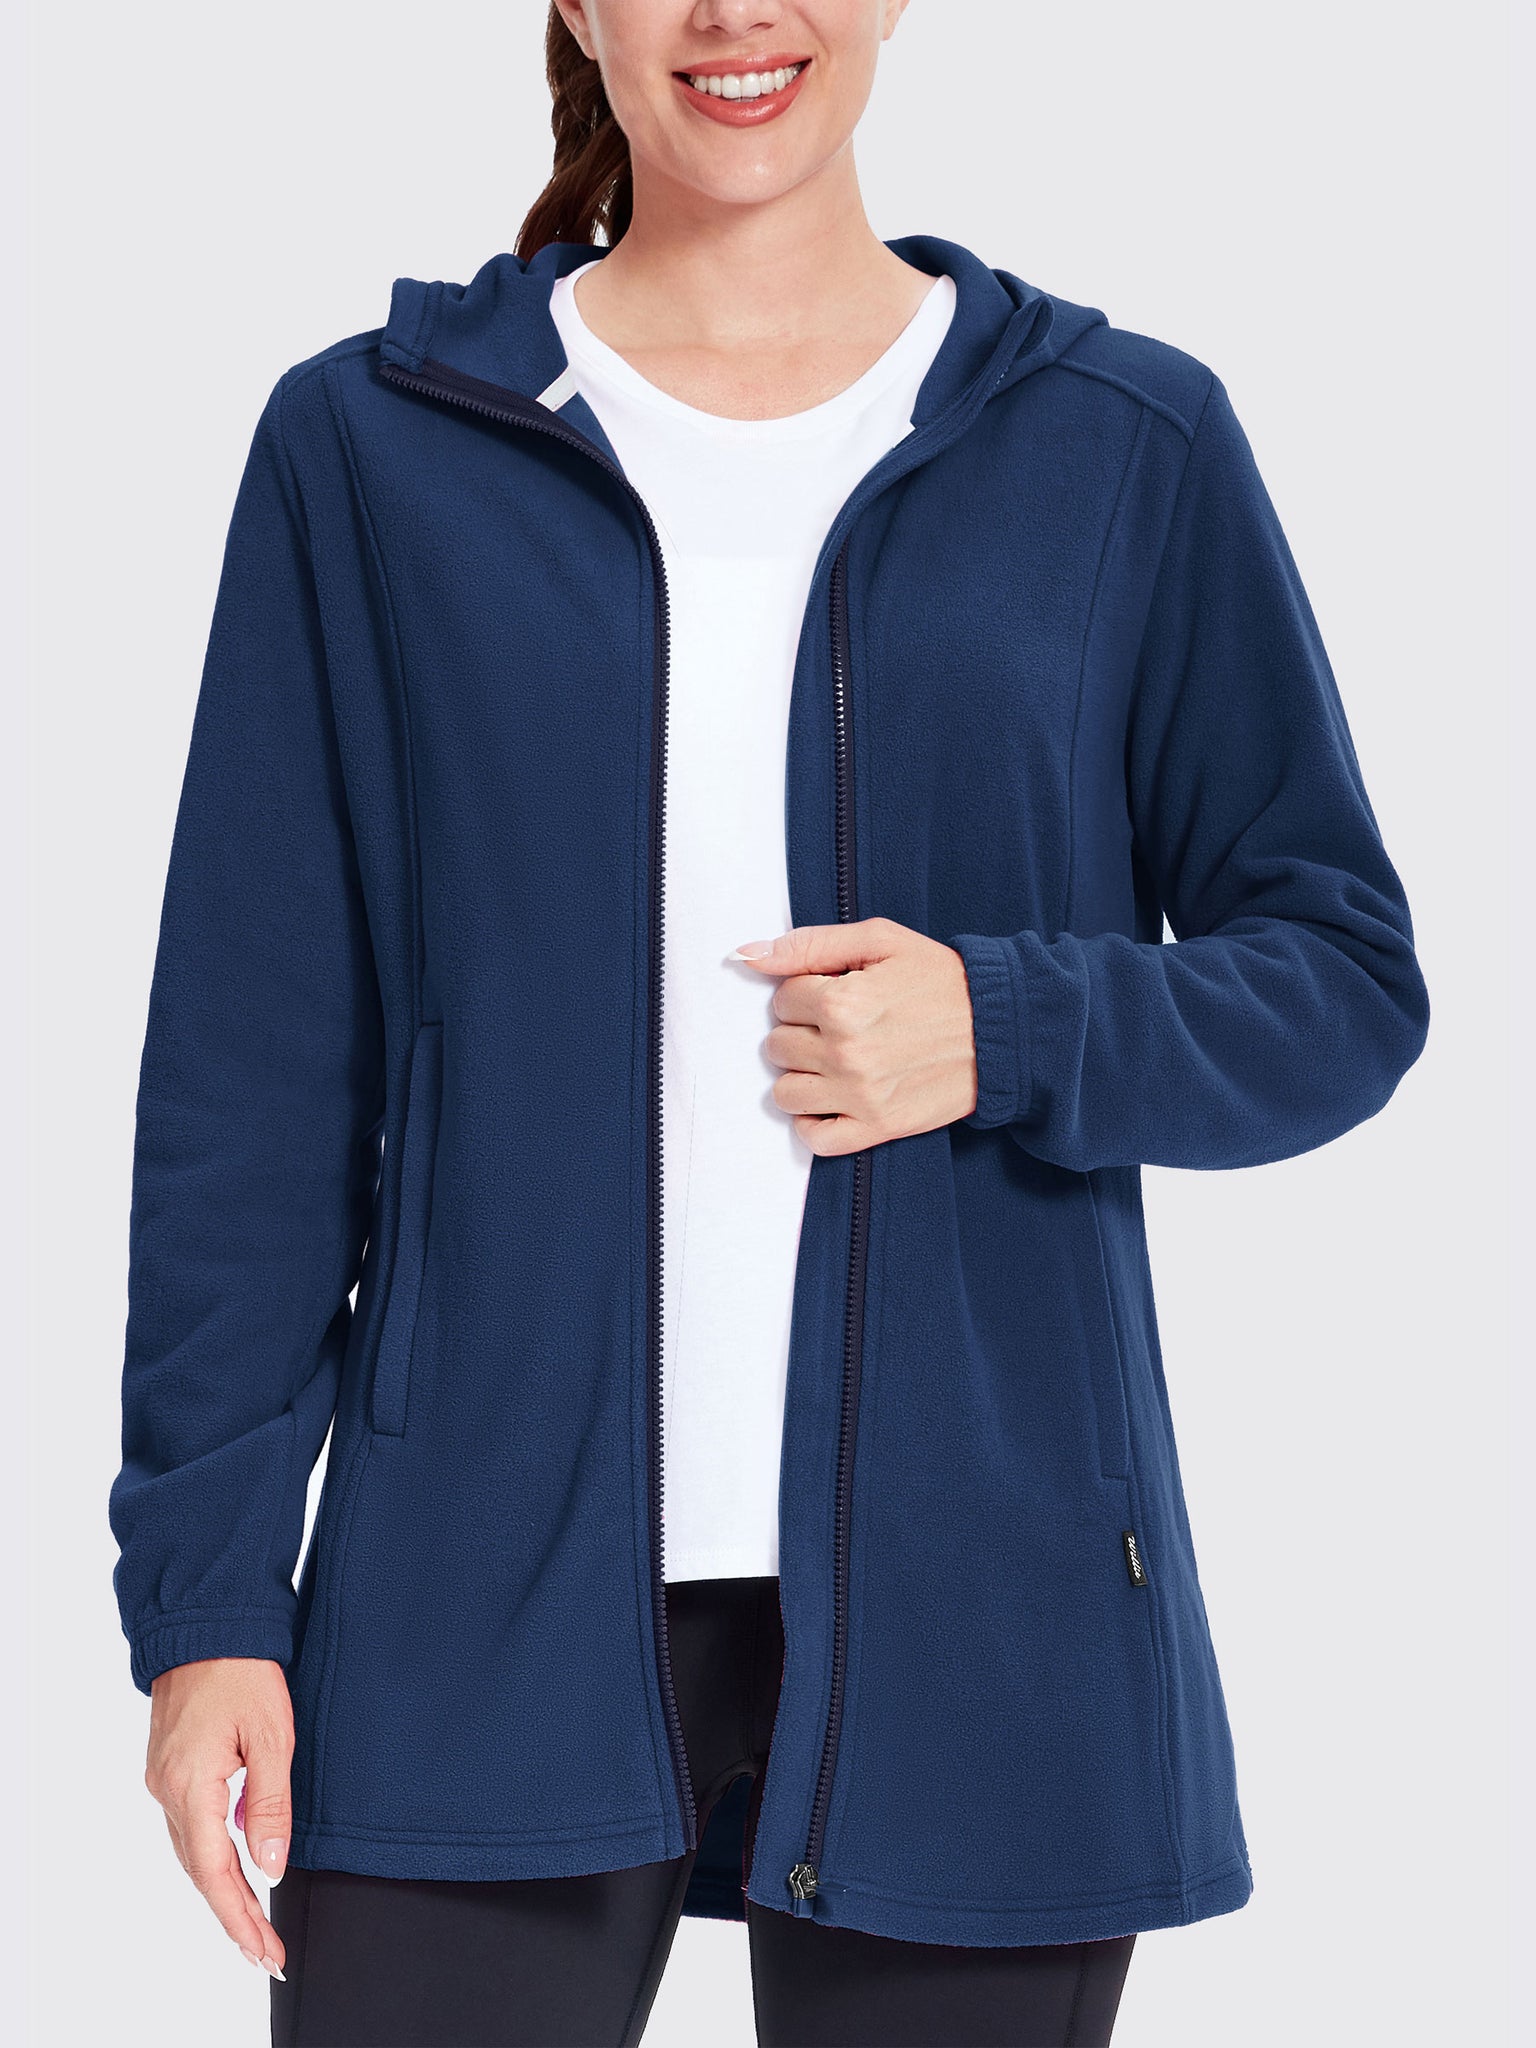 Women's Fleece Full-Zip Jacket Navy2